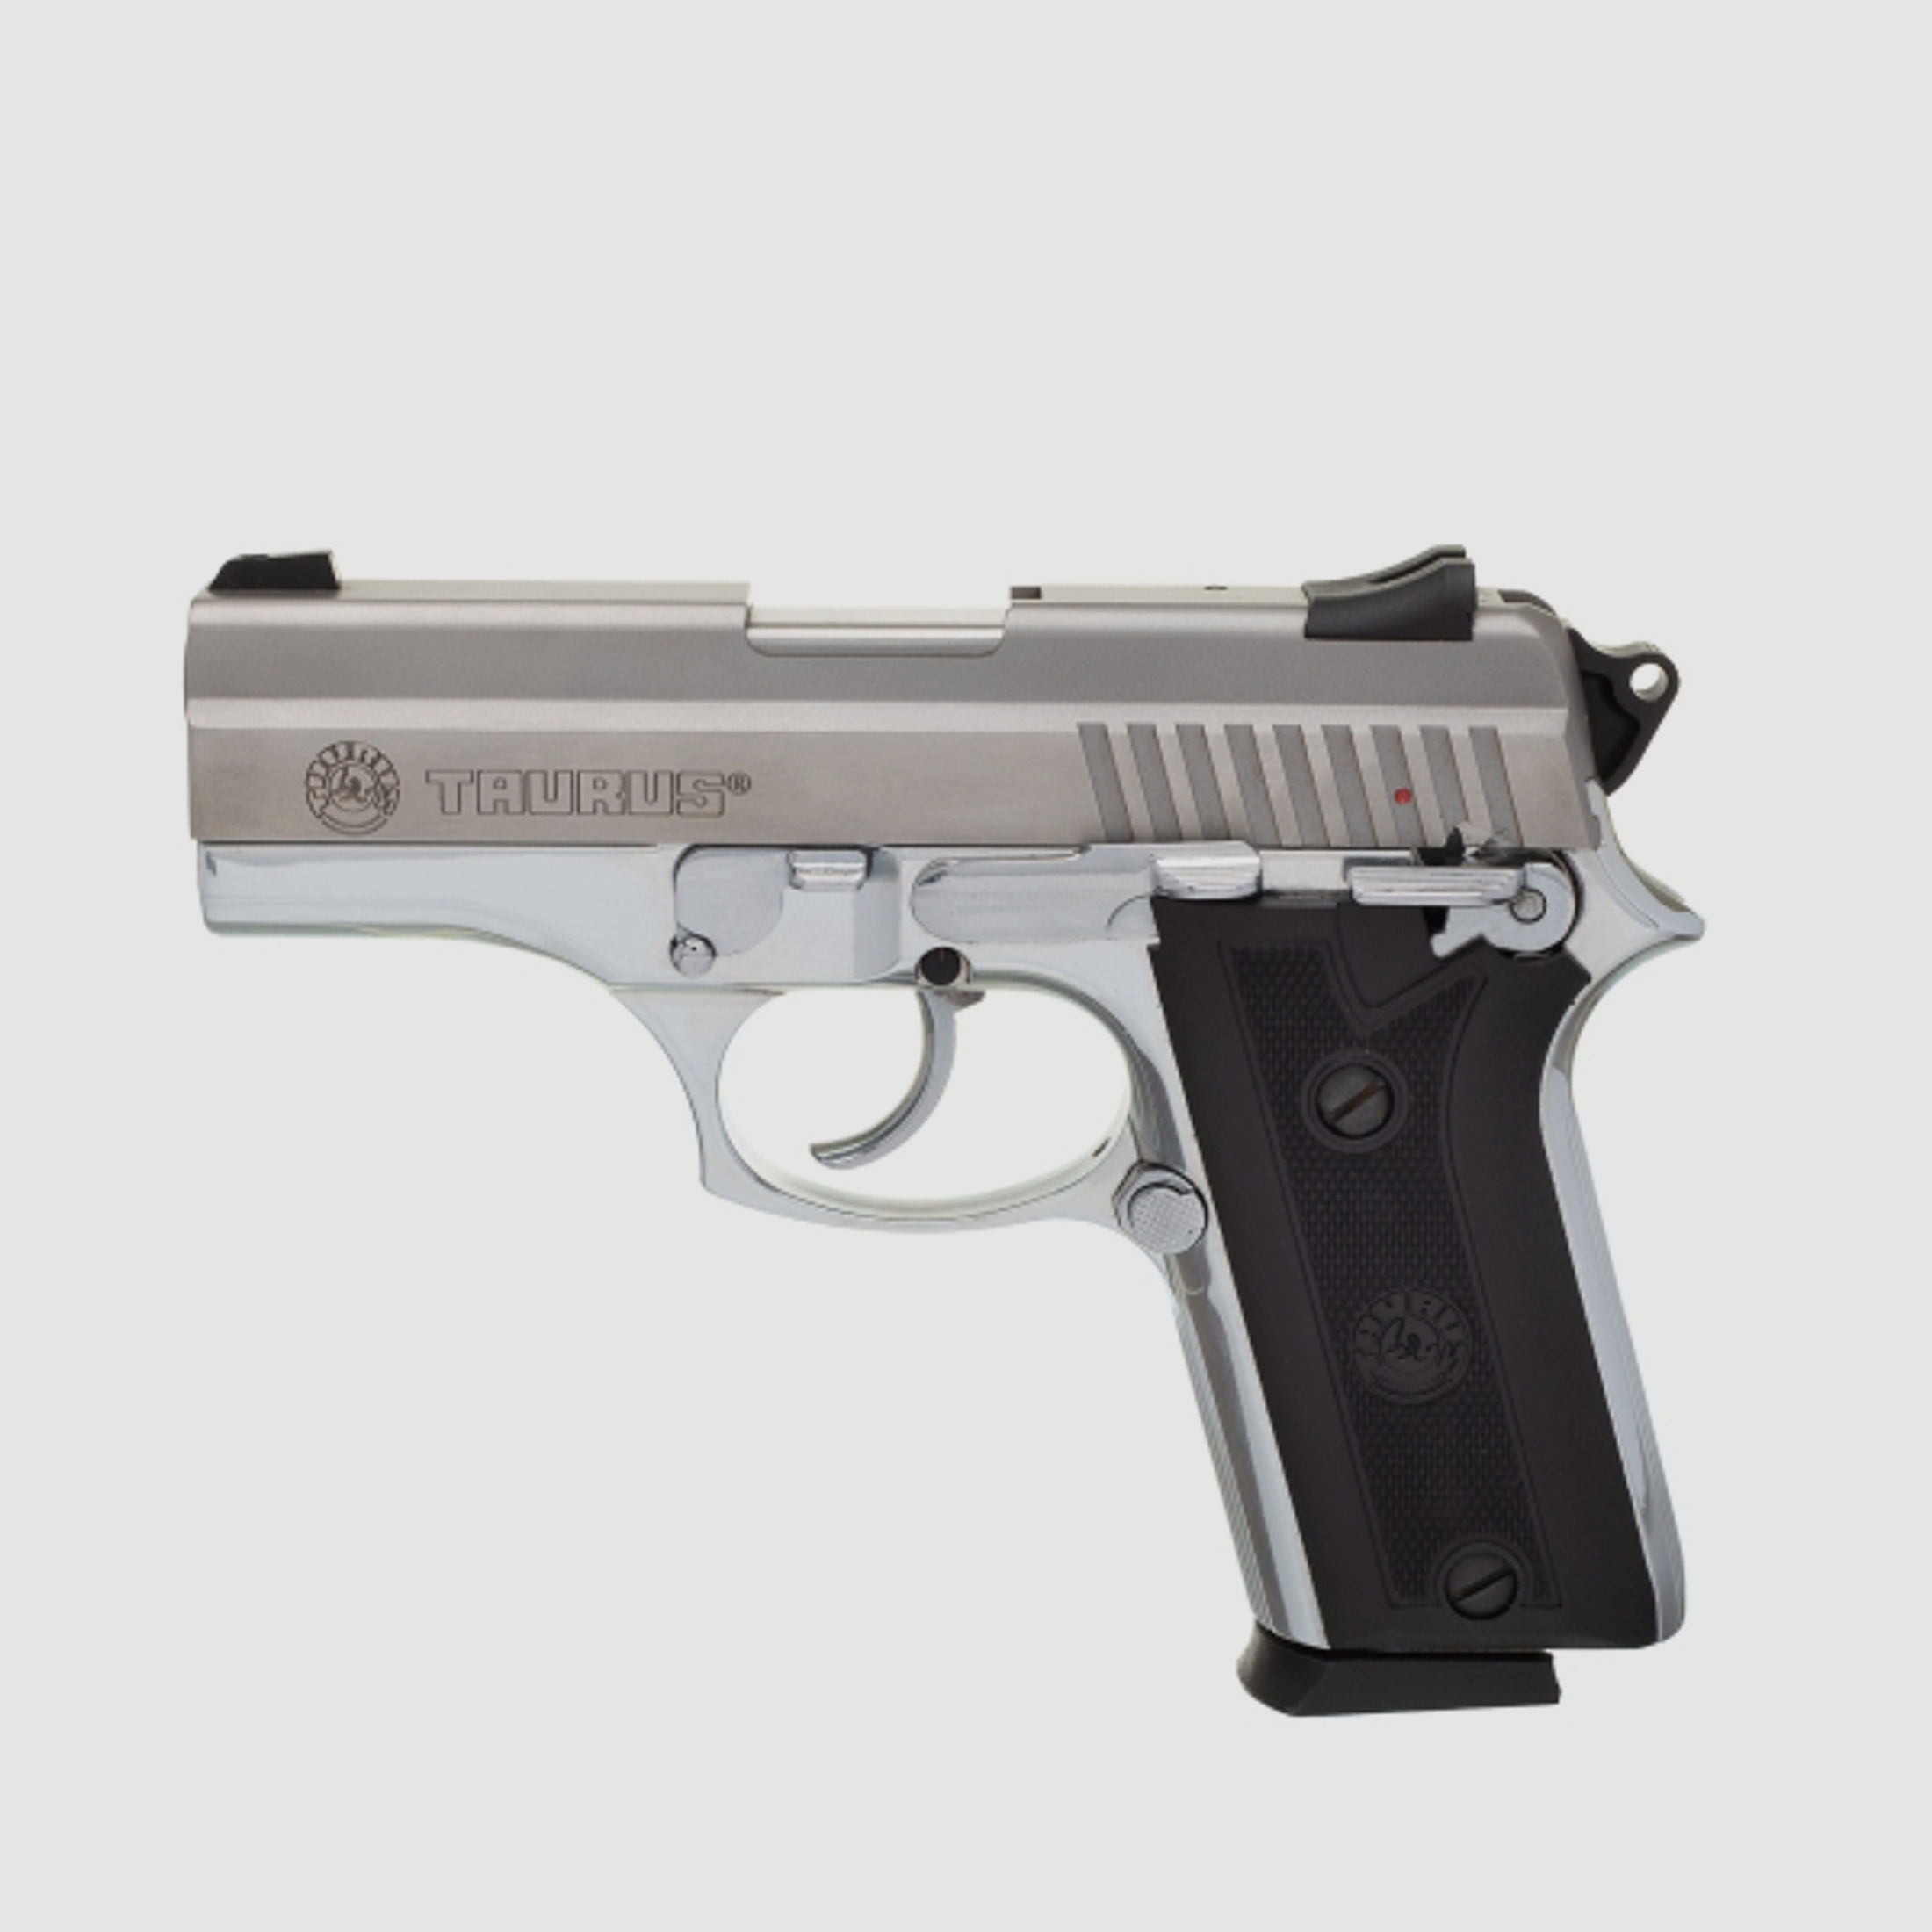 NEU Taurus Pistole PT 938 in .380 ACP 9mm kurz stainless Waffe vieler bras. Sicherheitskräfte